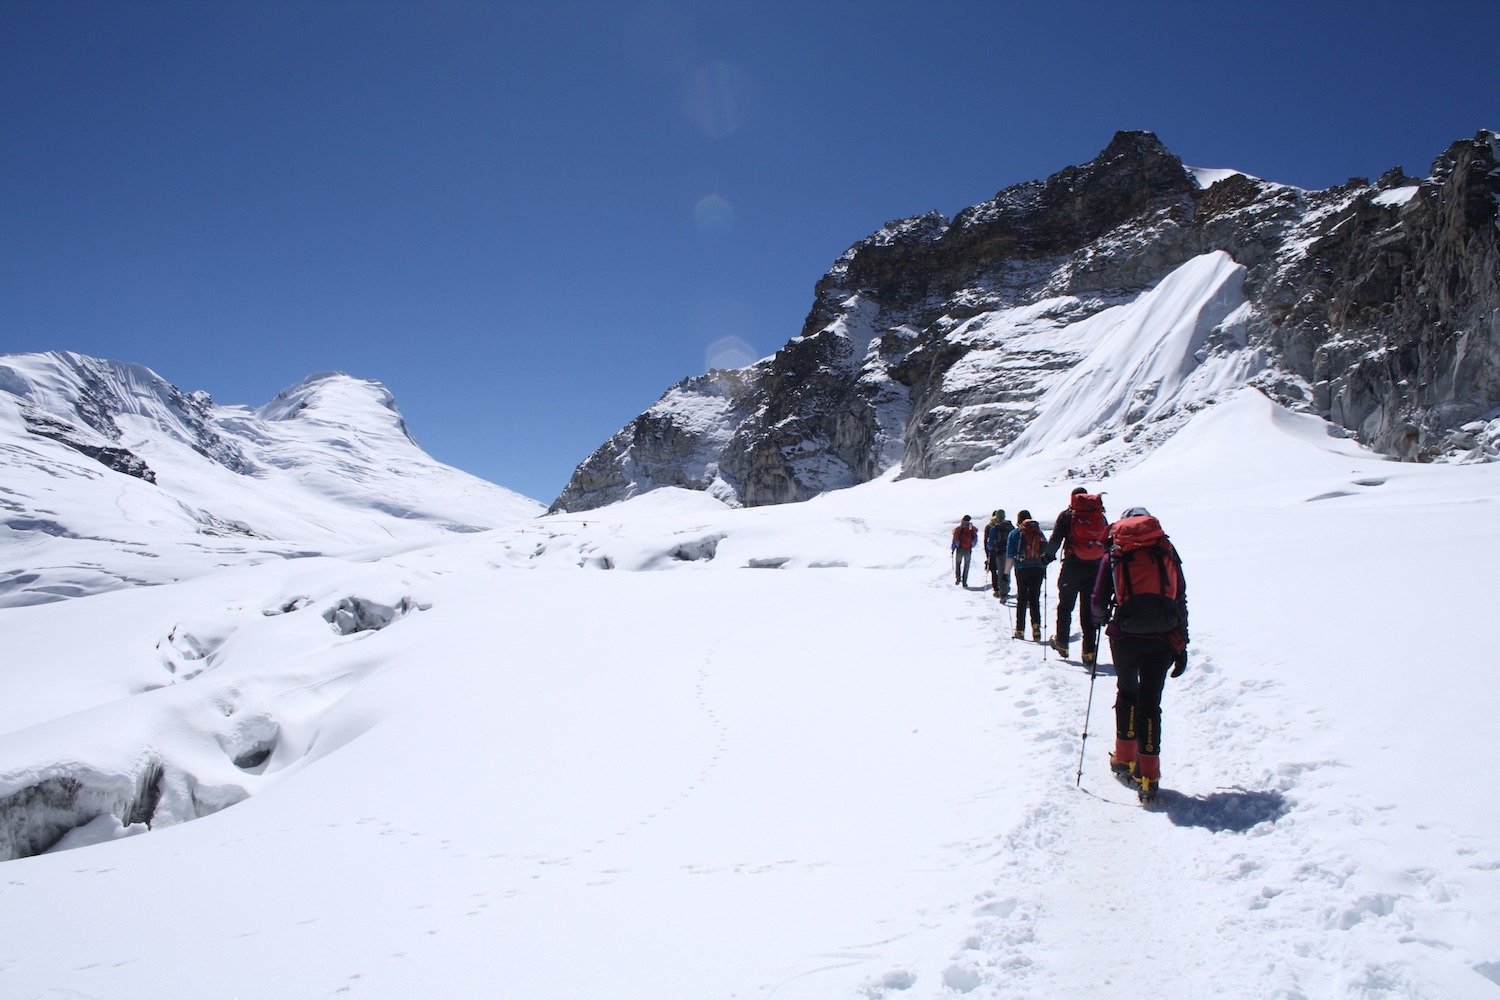 Kẹt ở Nepal do dịch Covid-19, 9x Việt đã chinh phục các đỉnh núi Himalaya, có đỉnh cao hơn 6000m